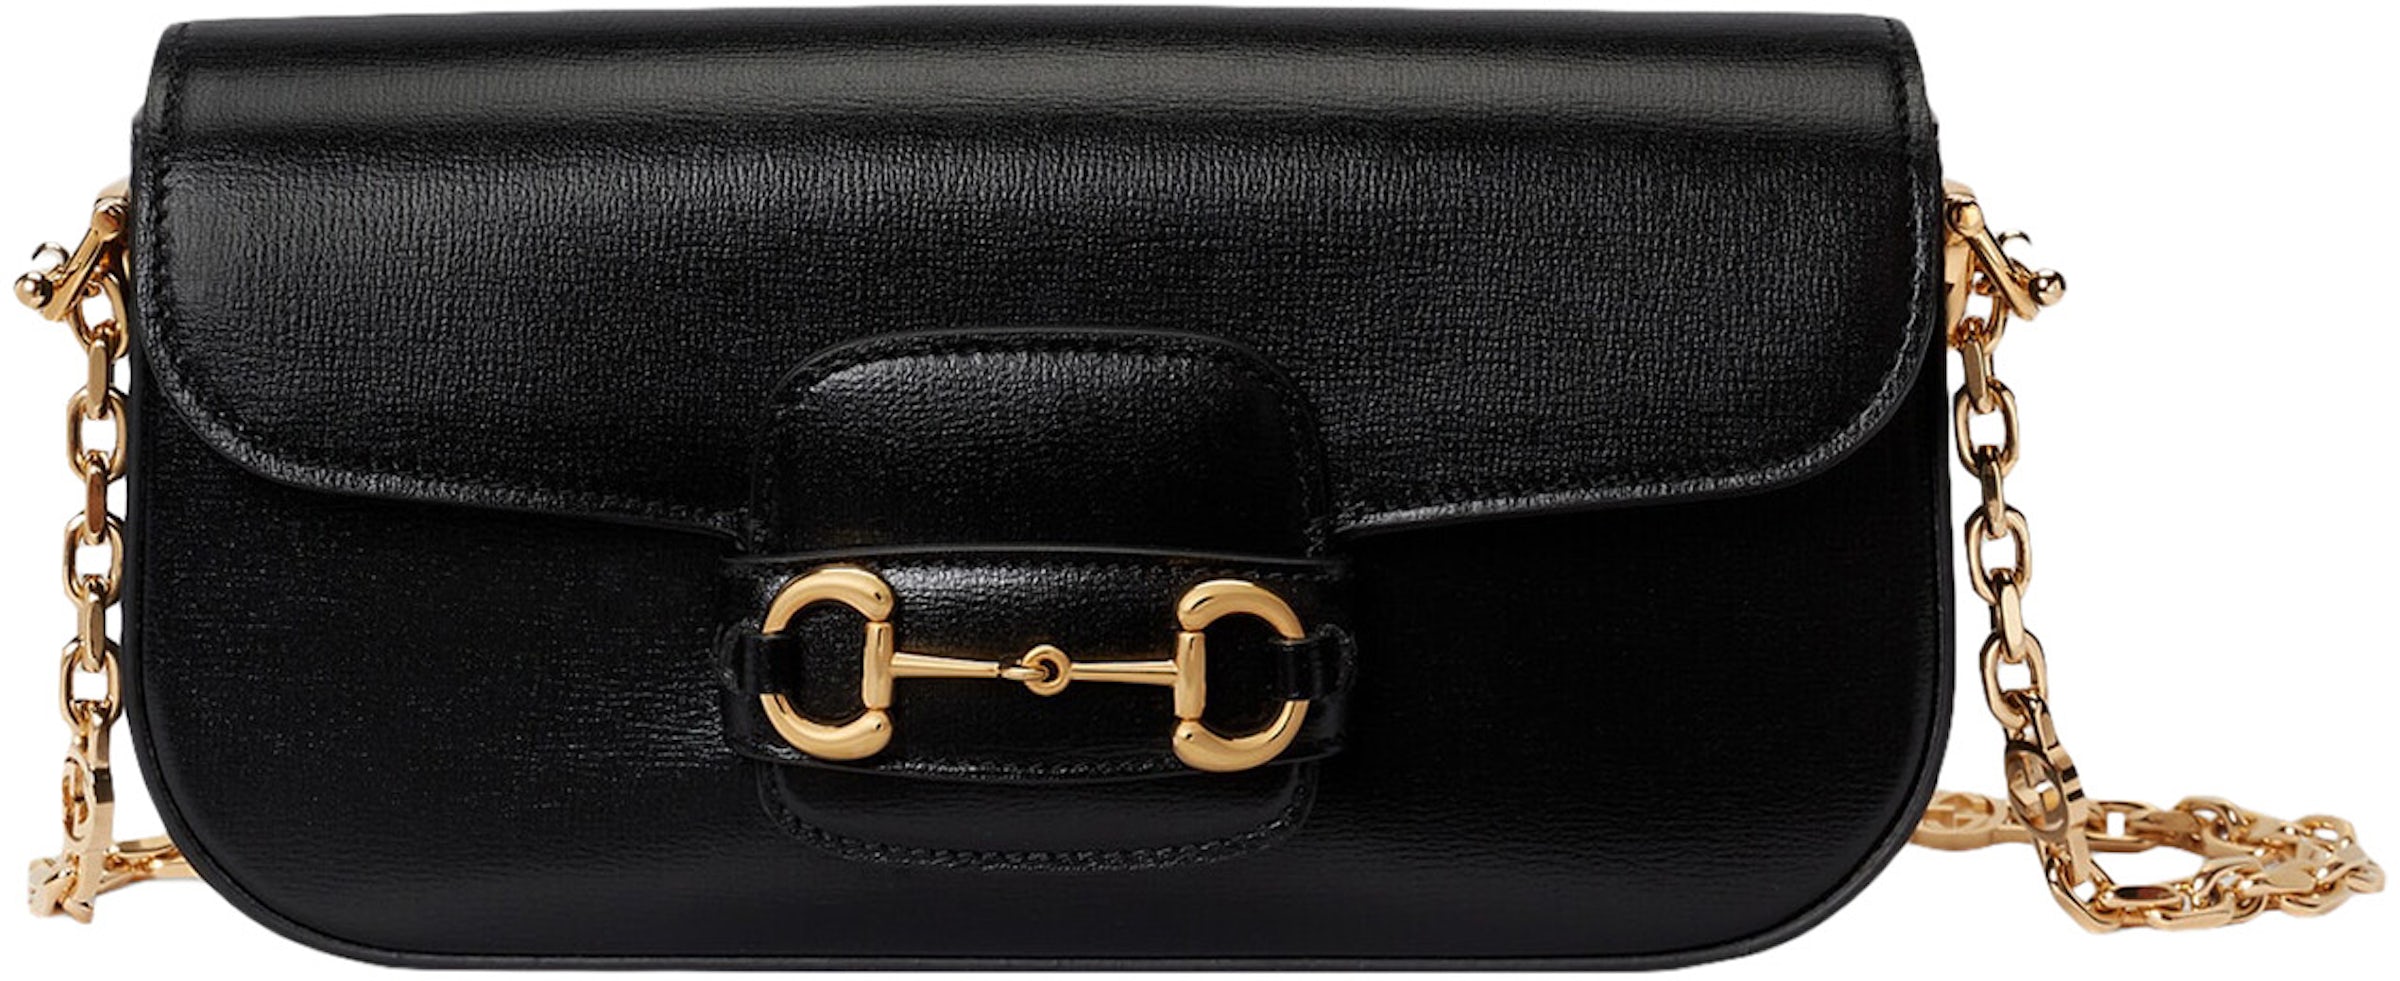 Gucci Horsebit 1955 Mini Bag - Black